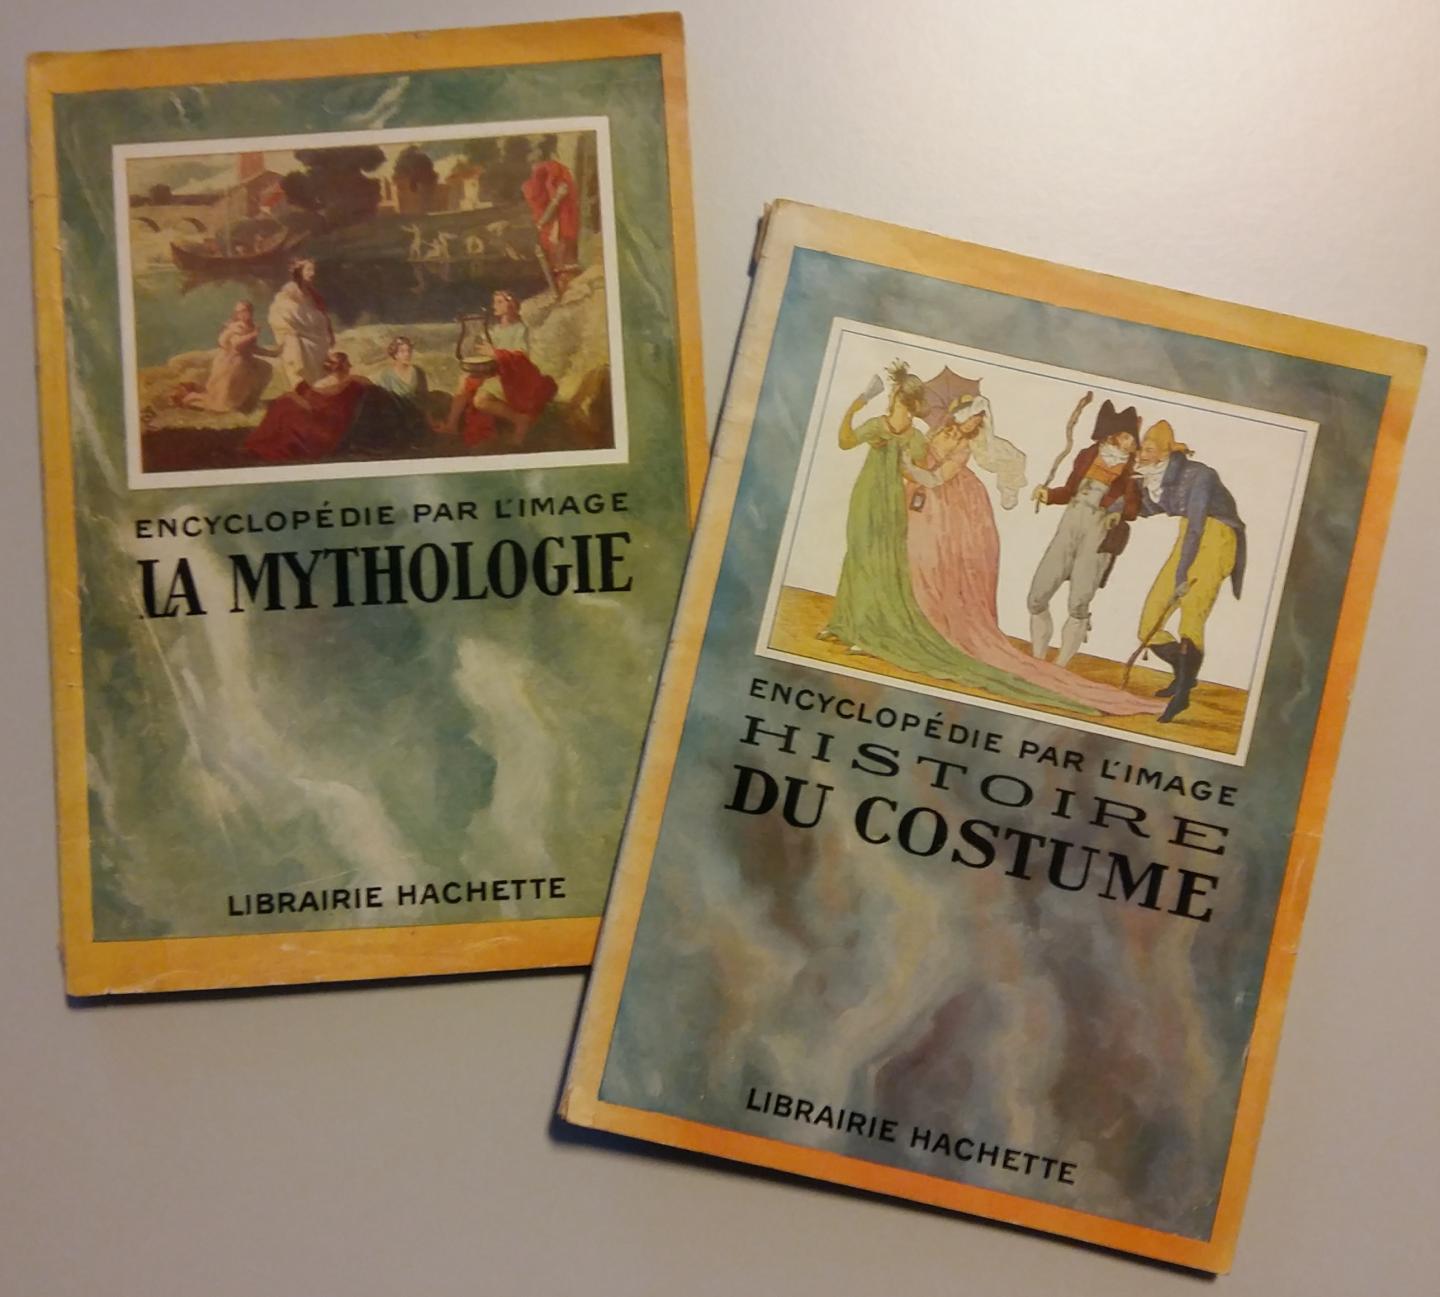  - La Mythologie - Encyclopédie par l'image, Librairie Hachette